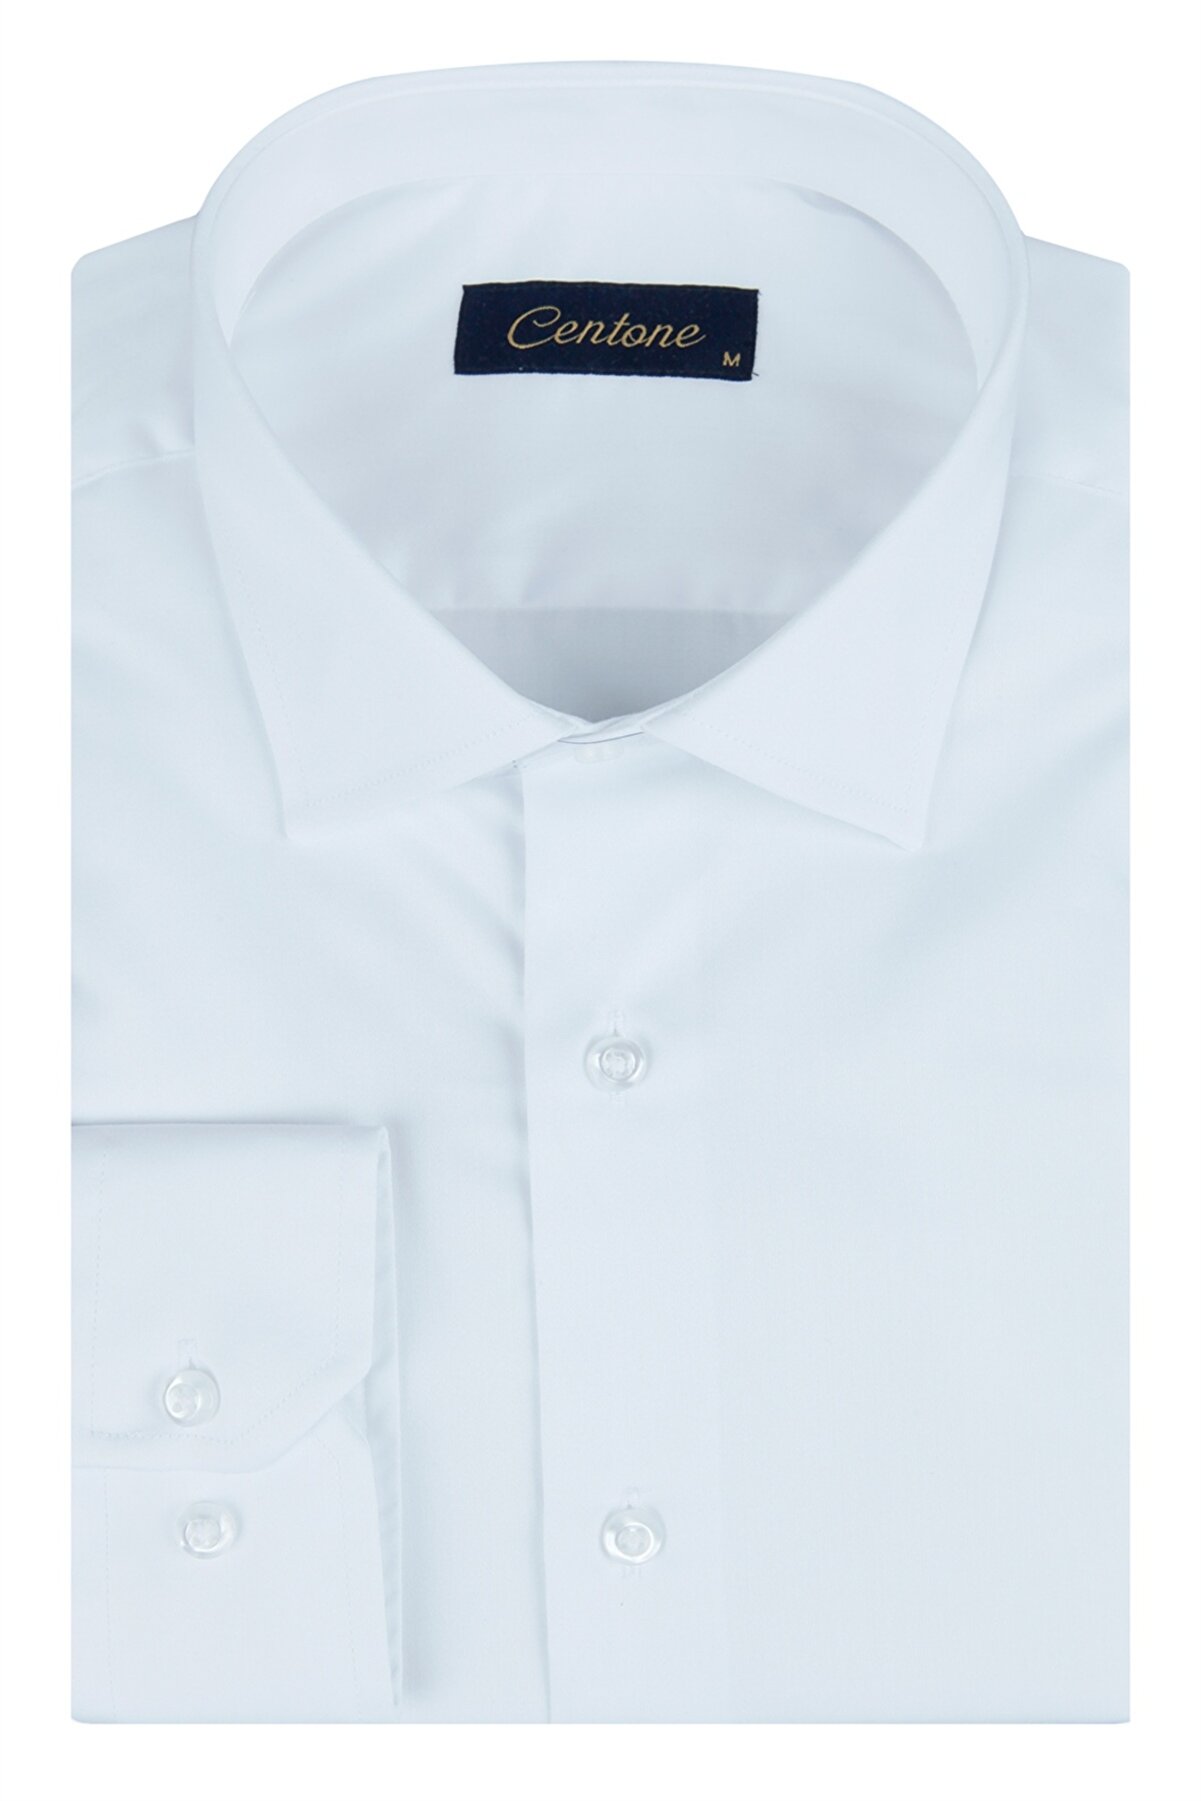 Centone Beyaz Comfort Fit Uzun Kol Gömlek